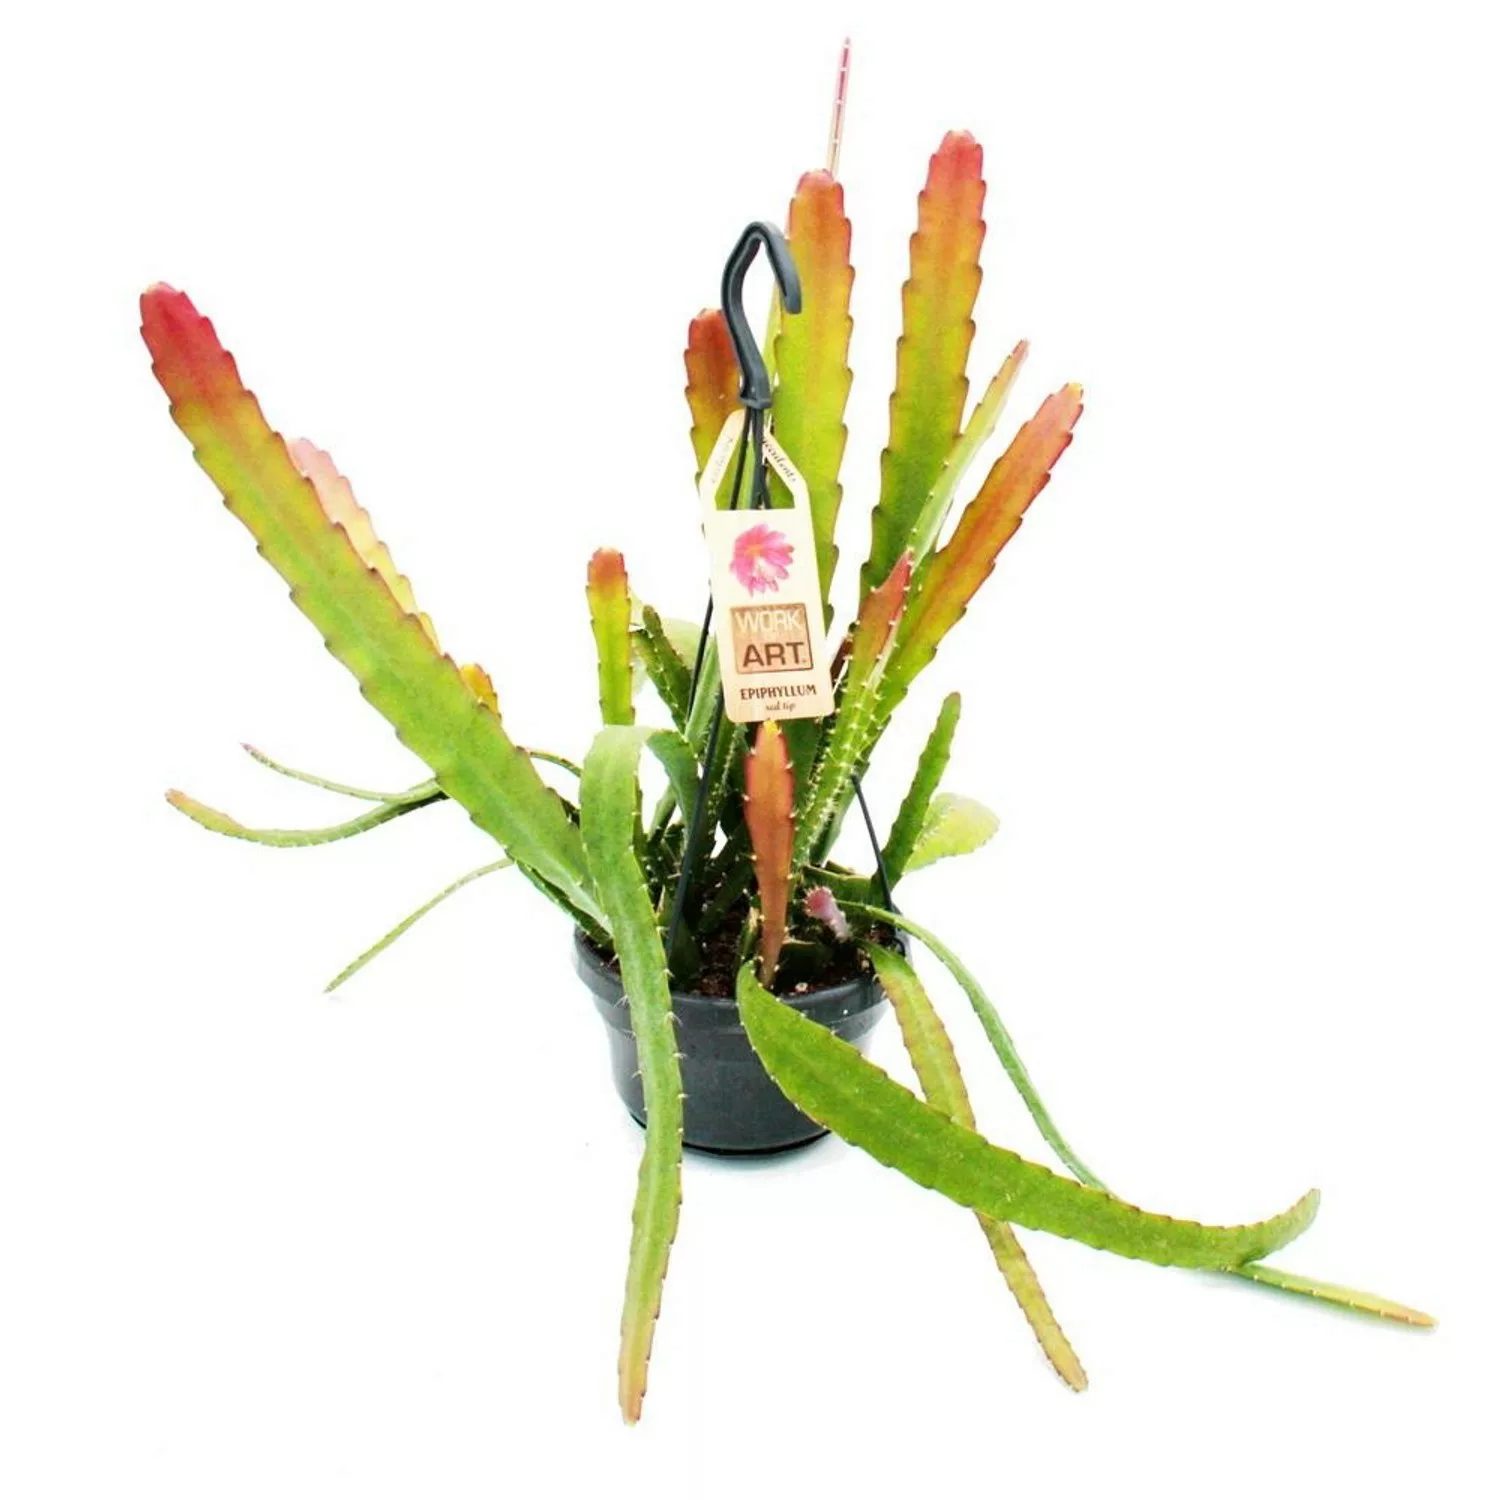 Exotenherz Epiphyllum Anguliger Red Tip Schwert-Kaktus Krokodilschwanz-Kakt günstig online kaufen